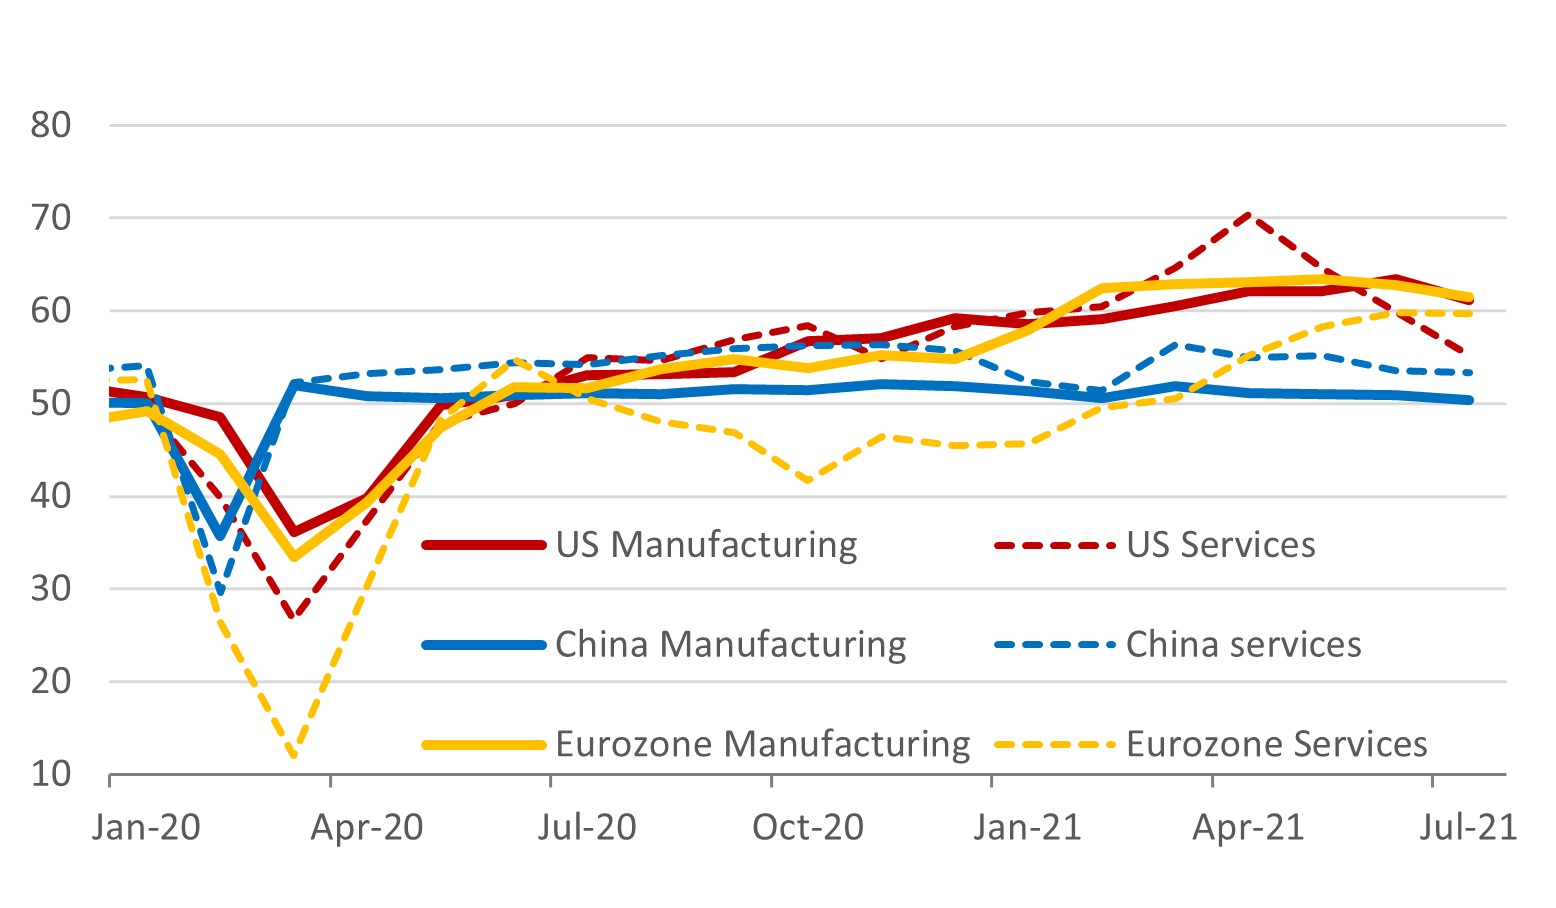 US, China, Eurozone Markit PMI indices